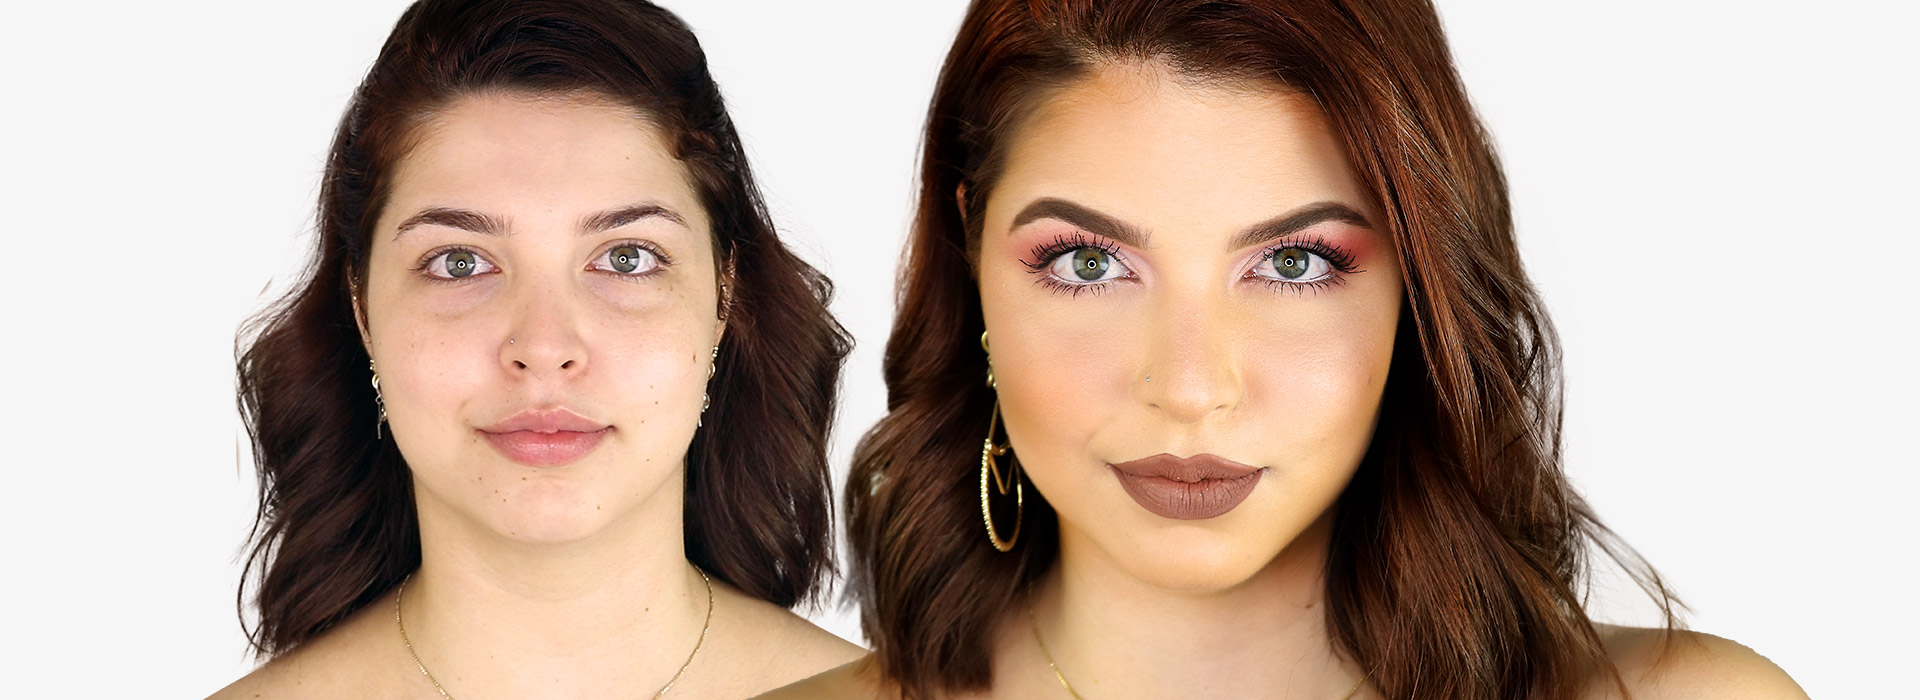 Maquiagem para o natal com o antes e depois do rosto da modelo.